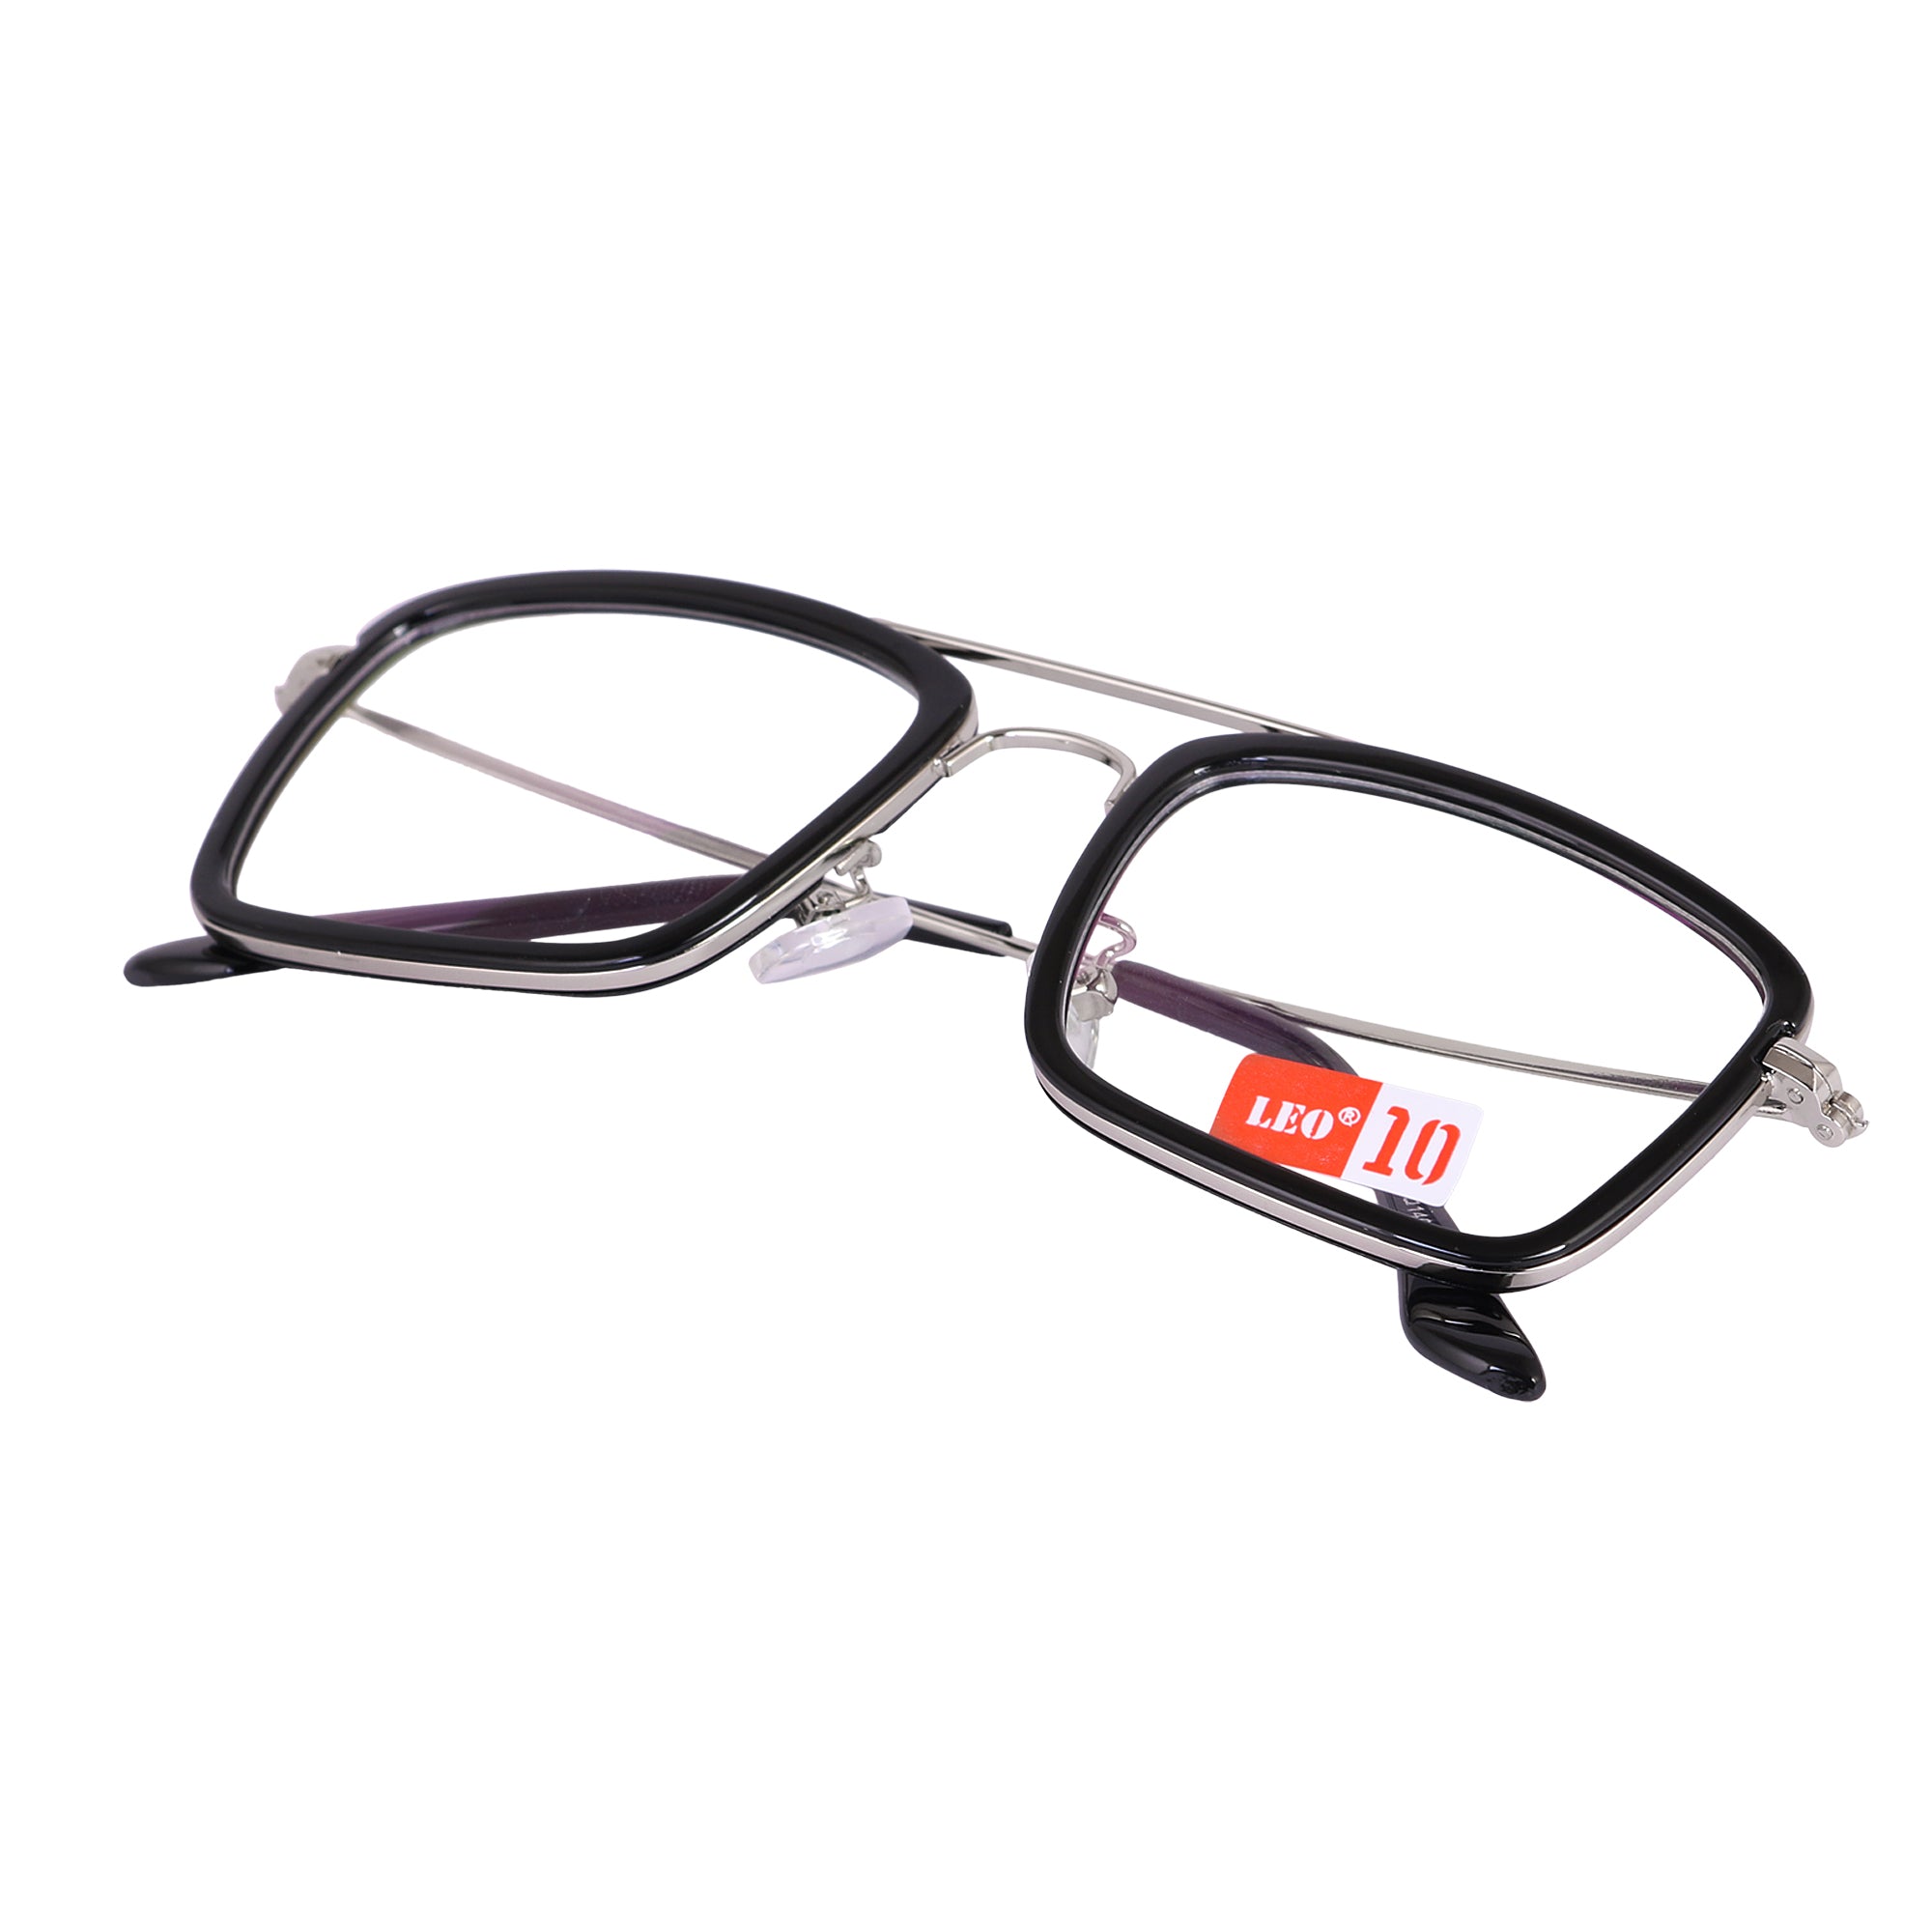 BLACK SILVER Square Rimmed Eyeglasses -L16006